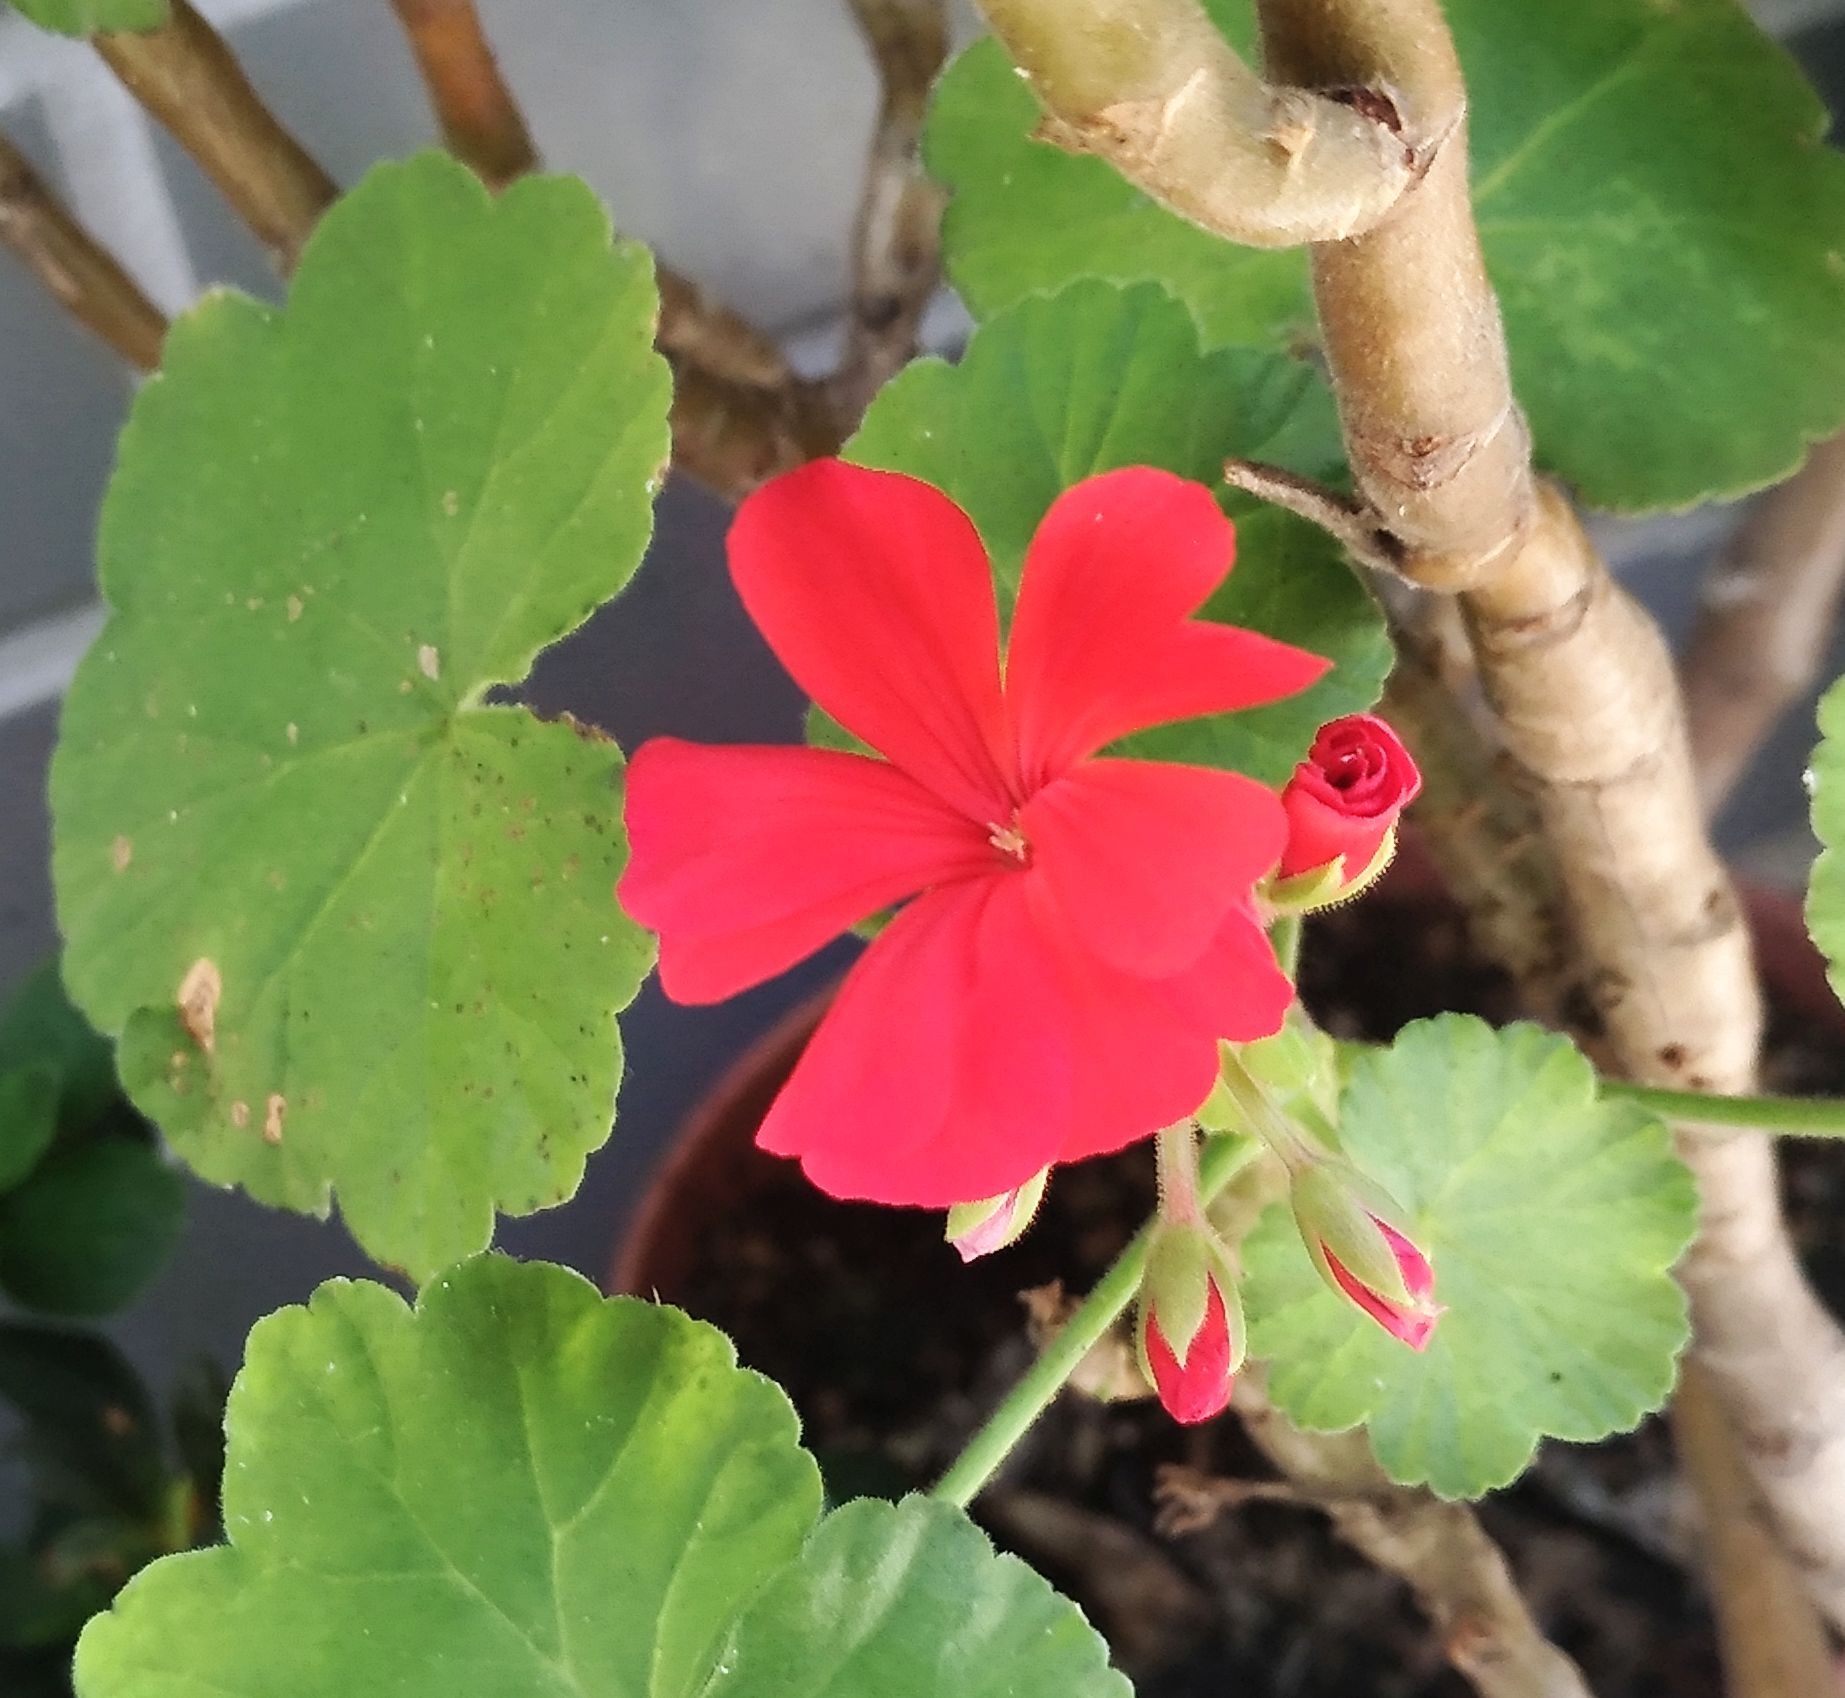 こころんグリーン Pa Twitter わが家のゼラニュウムの赤い花が 一つだけ開きました ずっと花が咲かなかったのが やっと咲きました もっといっぱい開いて欲しいです ゼラニュウム 赤い花 夏の花 夏 園芸品種 園芸 ガーデニング 熊本市南区 熊本